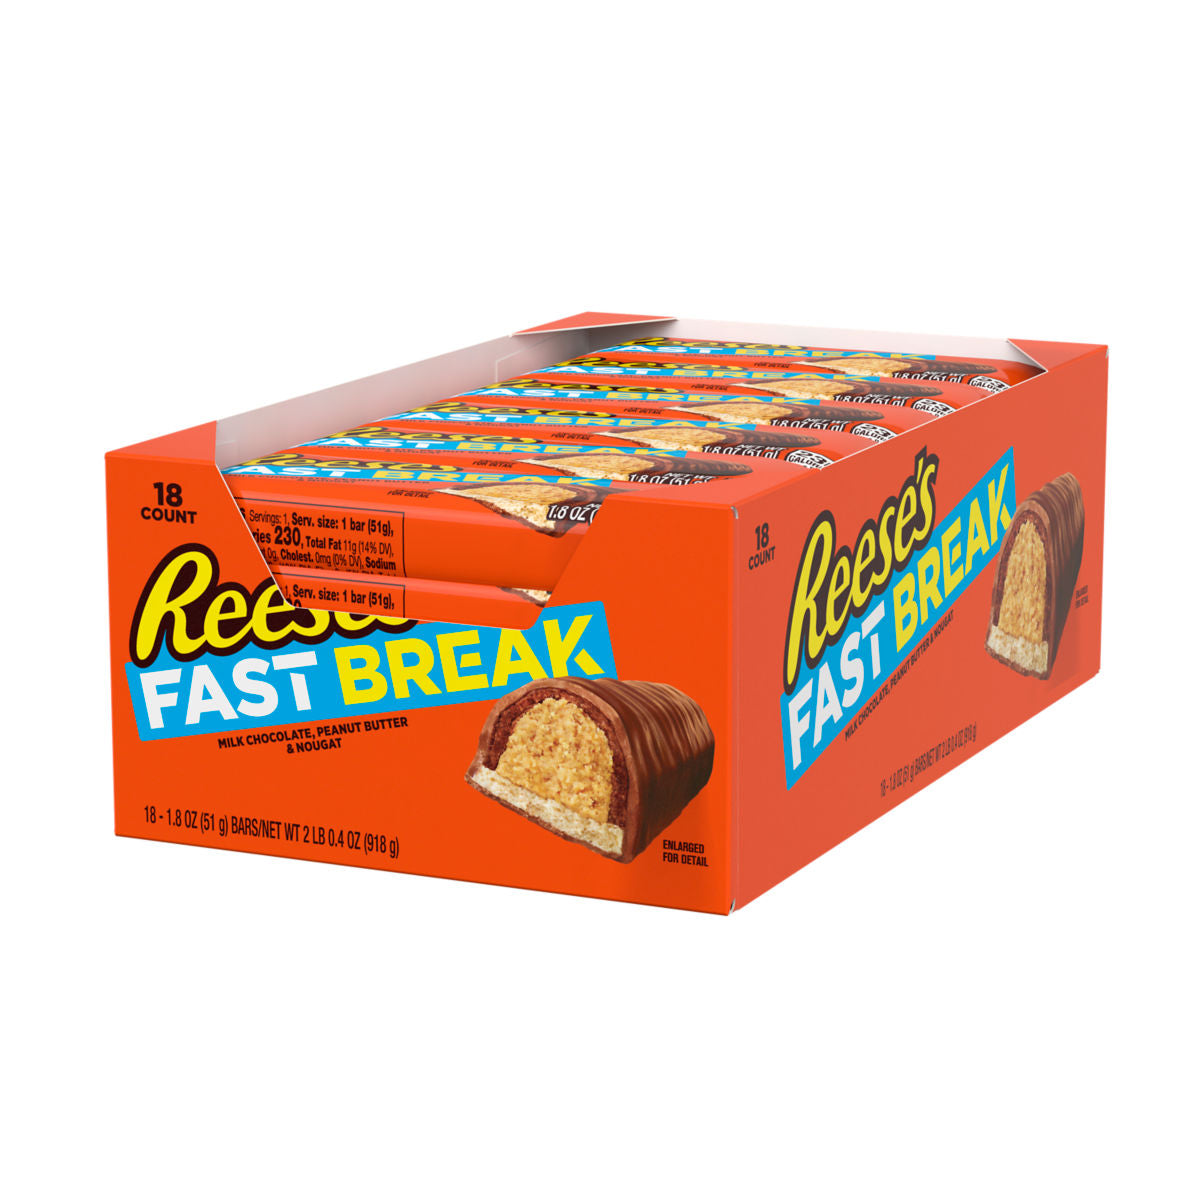 Reese's Fast Break Bar 51 g (18 Pack)